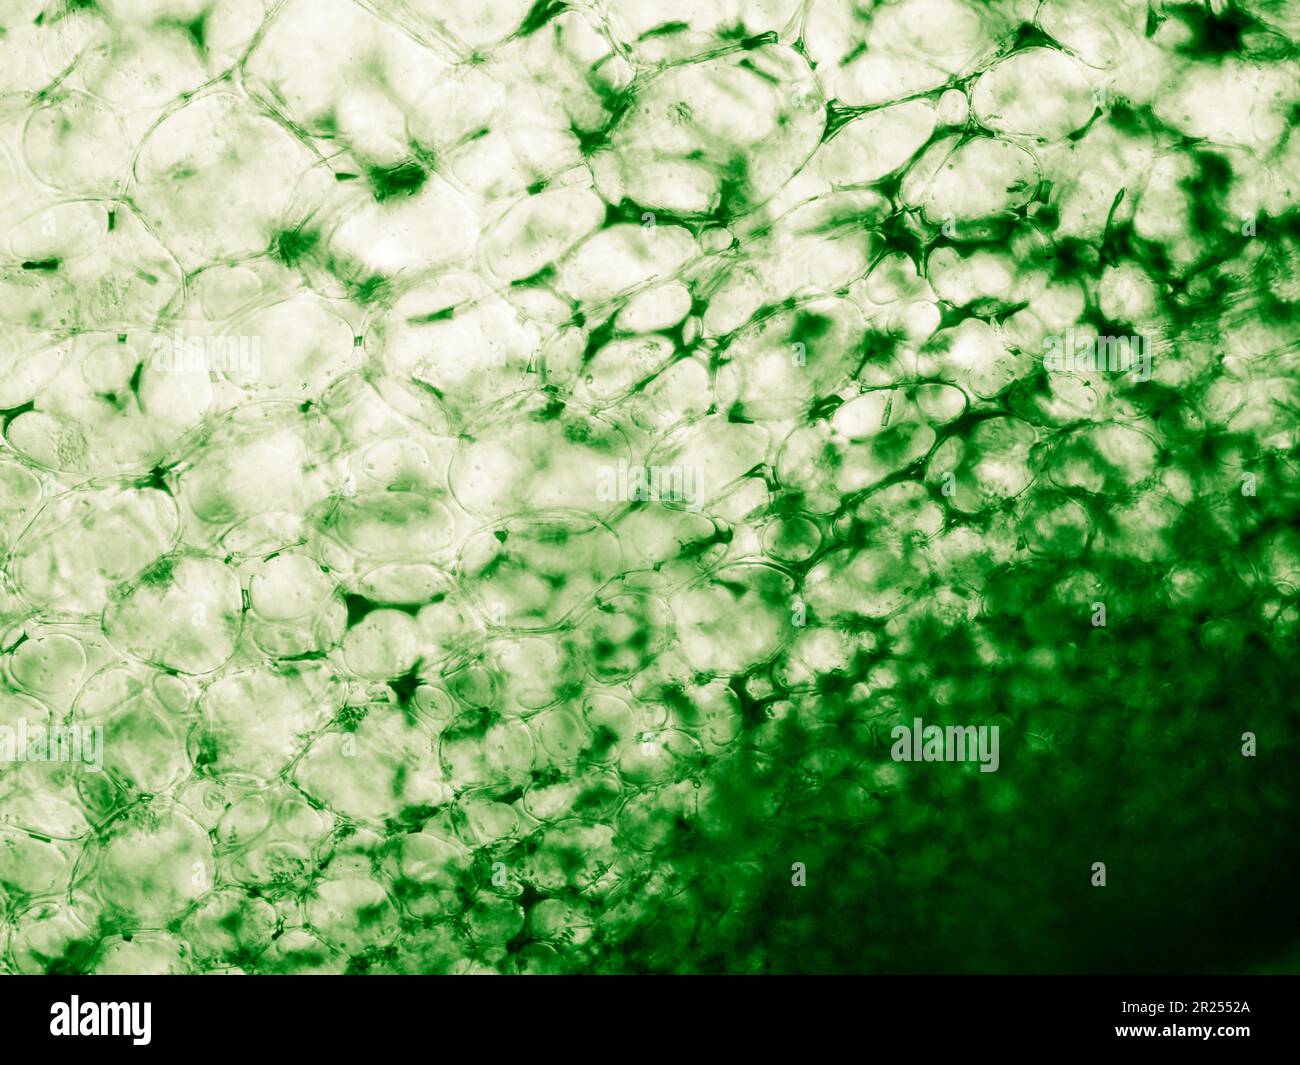 Die im biologischen optischen Mikroskop sichtbare Squashzelltextur. Gefärbt für ein besseres künstlerisches Erlebnis und zur Verbesserung von Sichtbarkeit und Kontrast Stockfoto